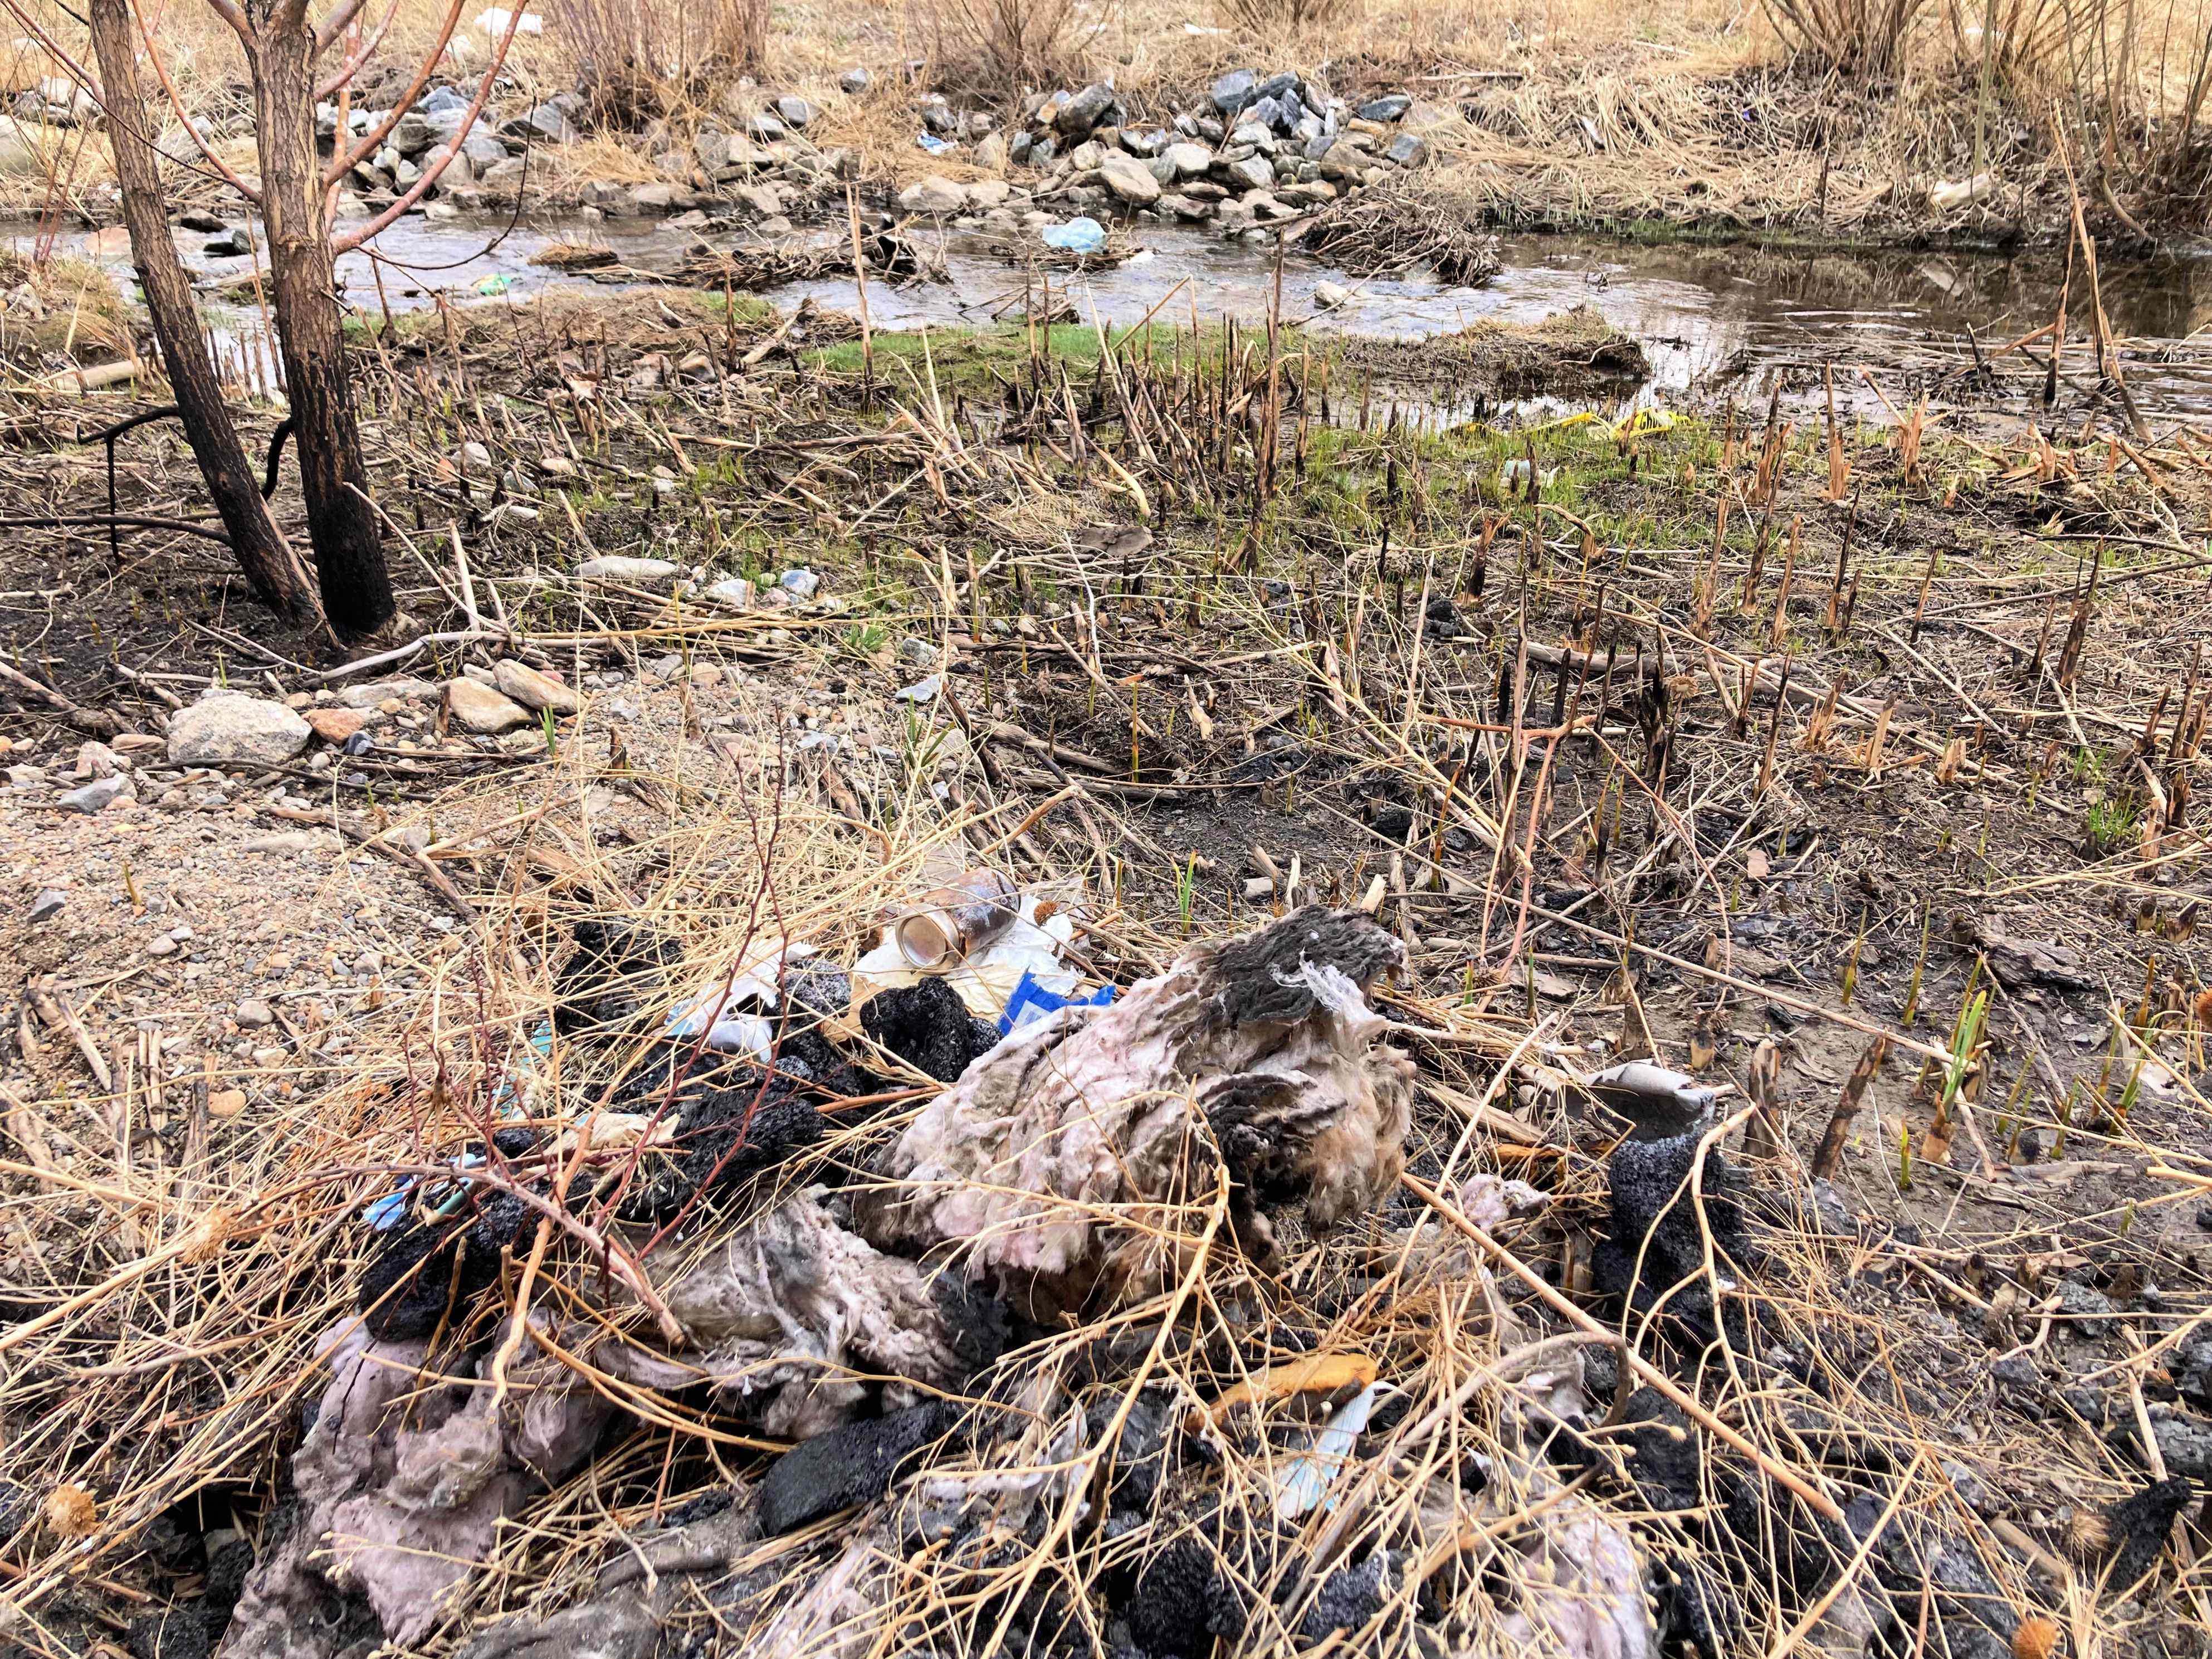 Fire debris in the stream in April 2022